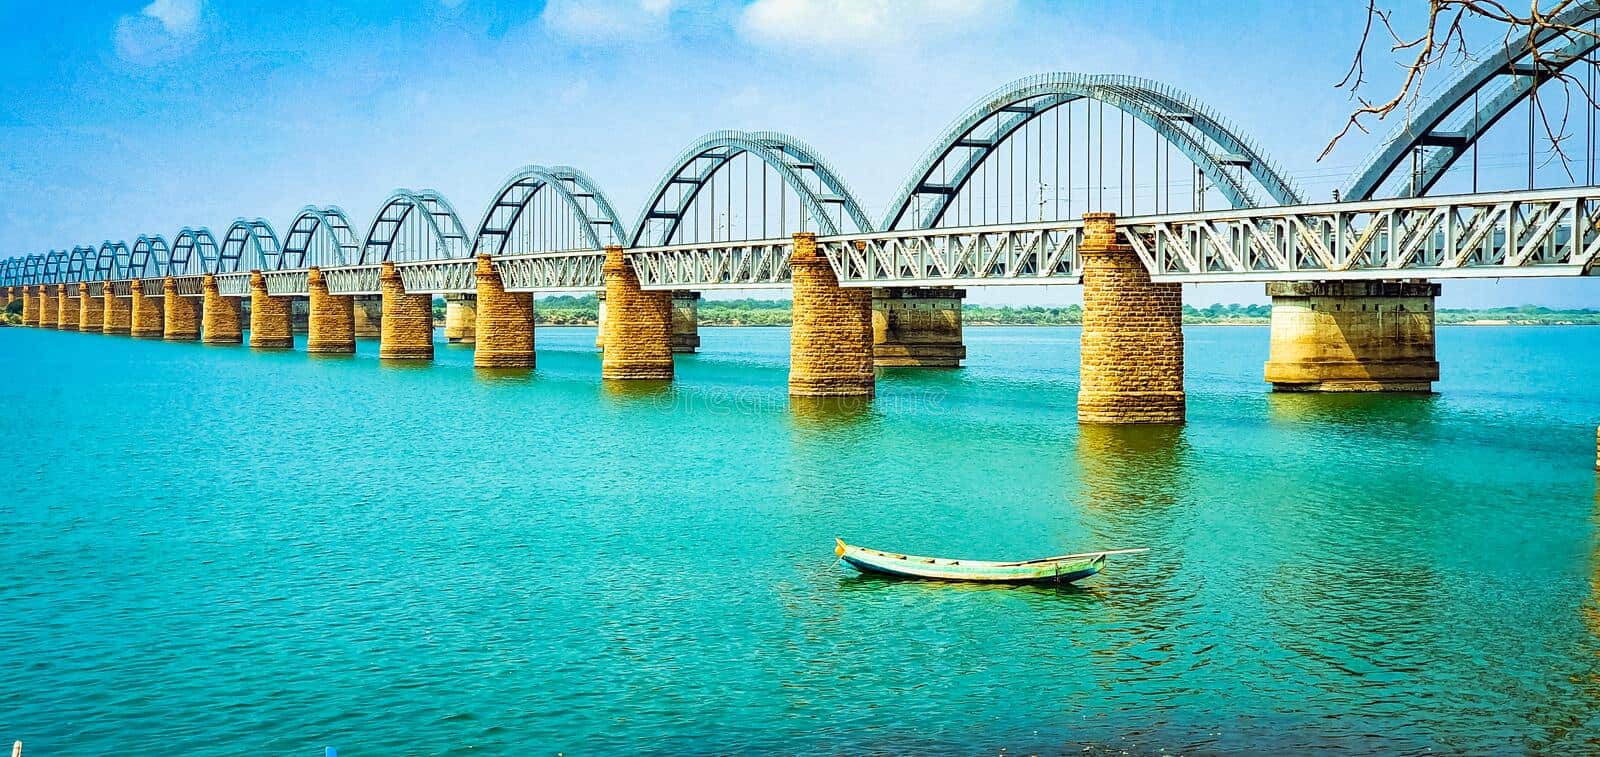 भारत के 10 सबसे लंबे रेलवे ब्रिज